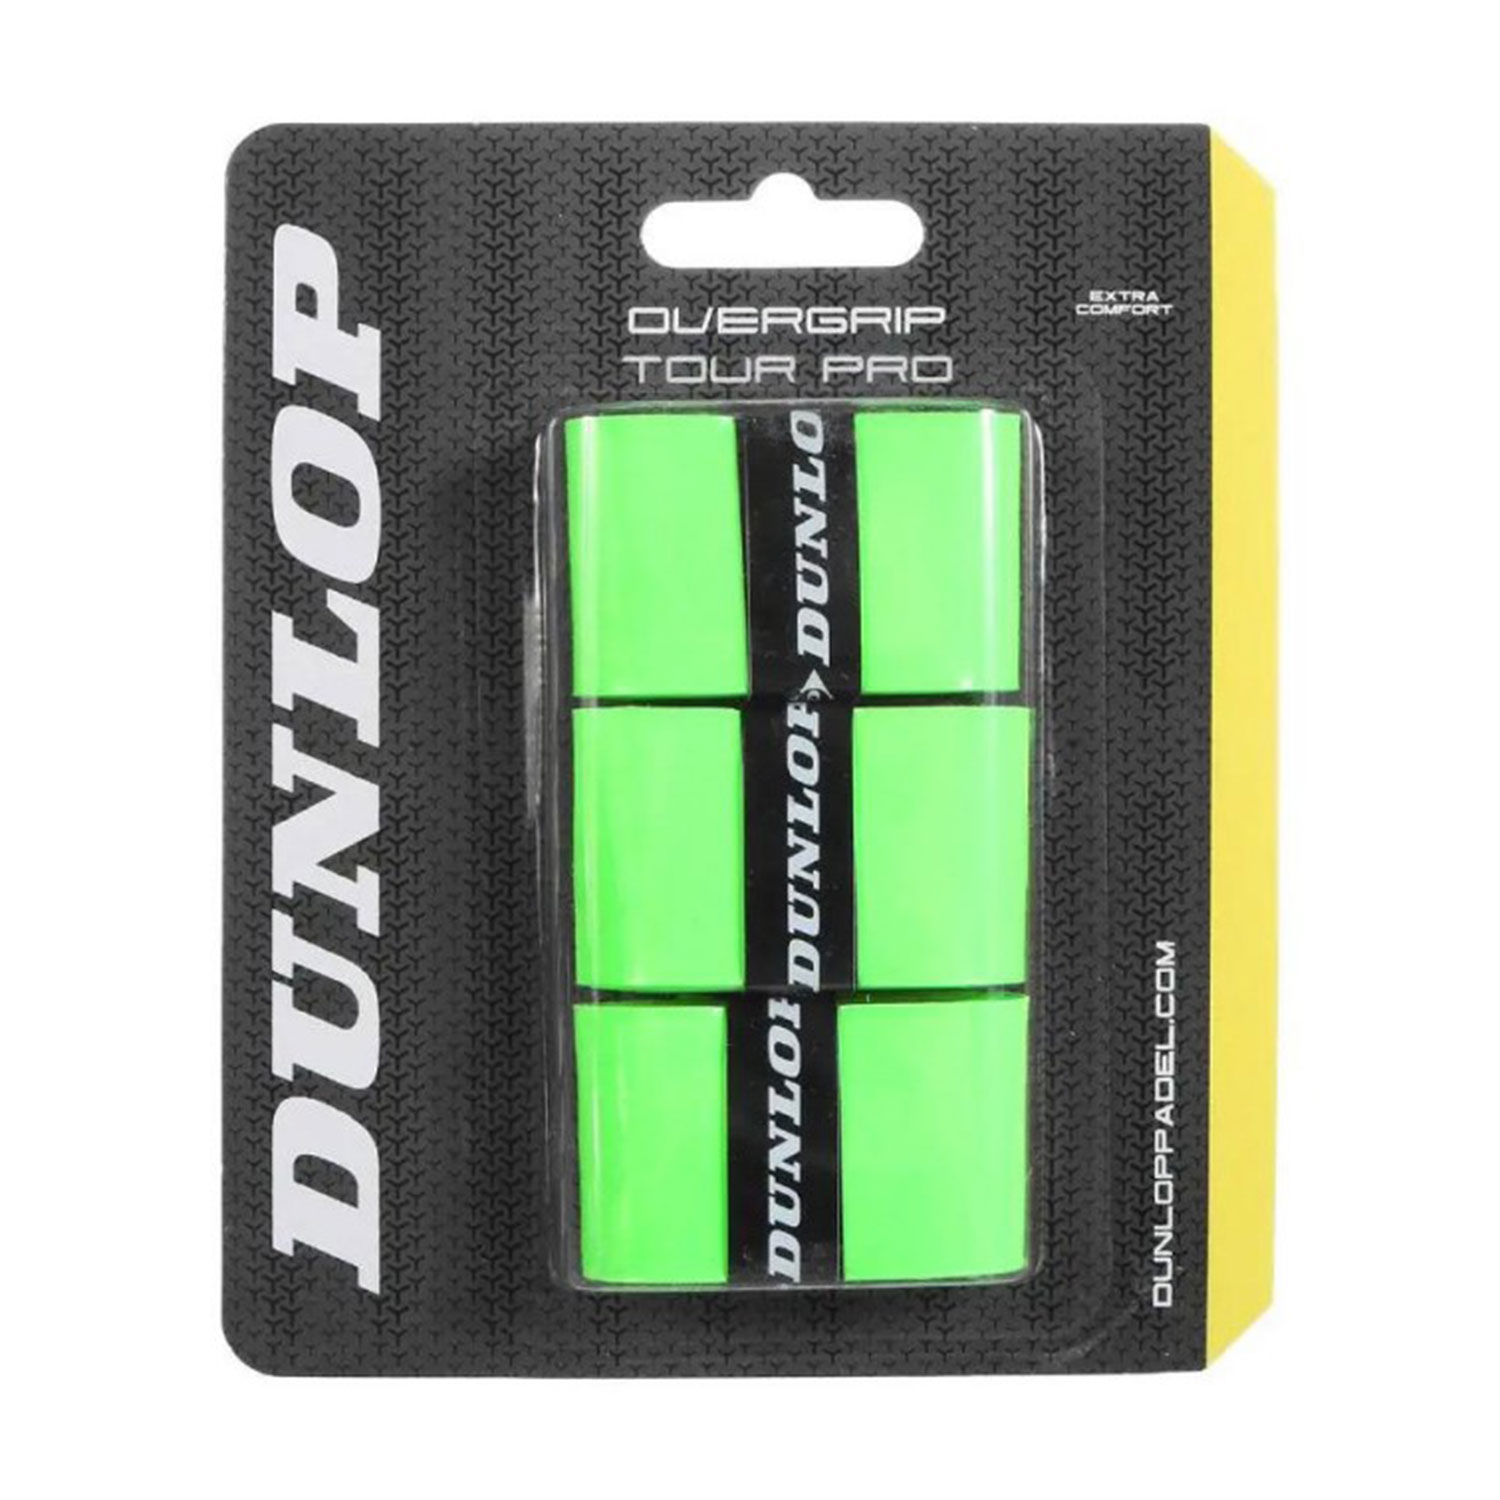 Dunlop Tour Pro x 3 Overgrip - Green